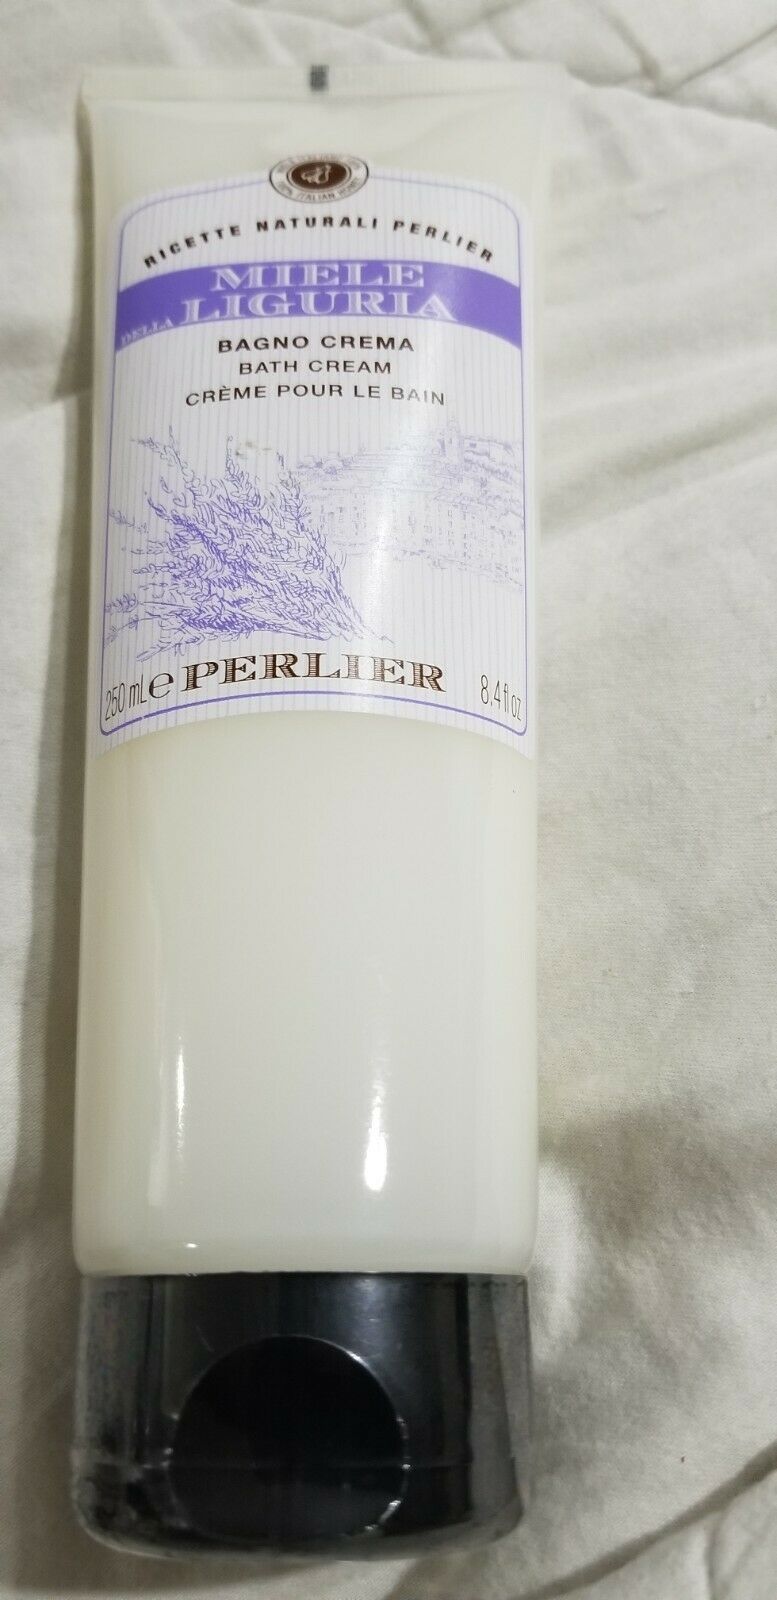 Perlier Miele Della Liguria Bath Cream 8.4 fl oz Brand New Sealed - $20.00